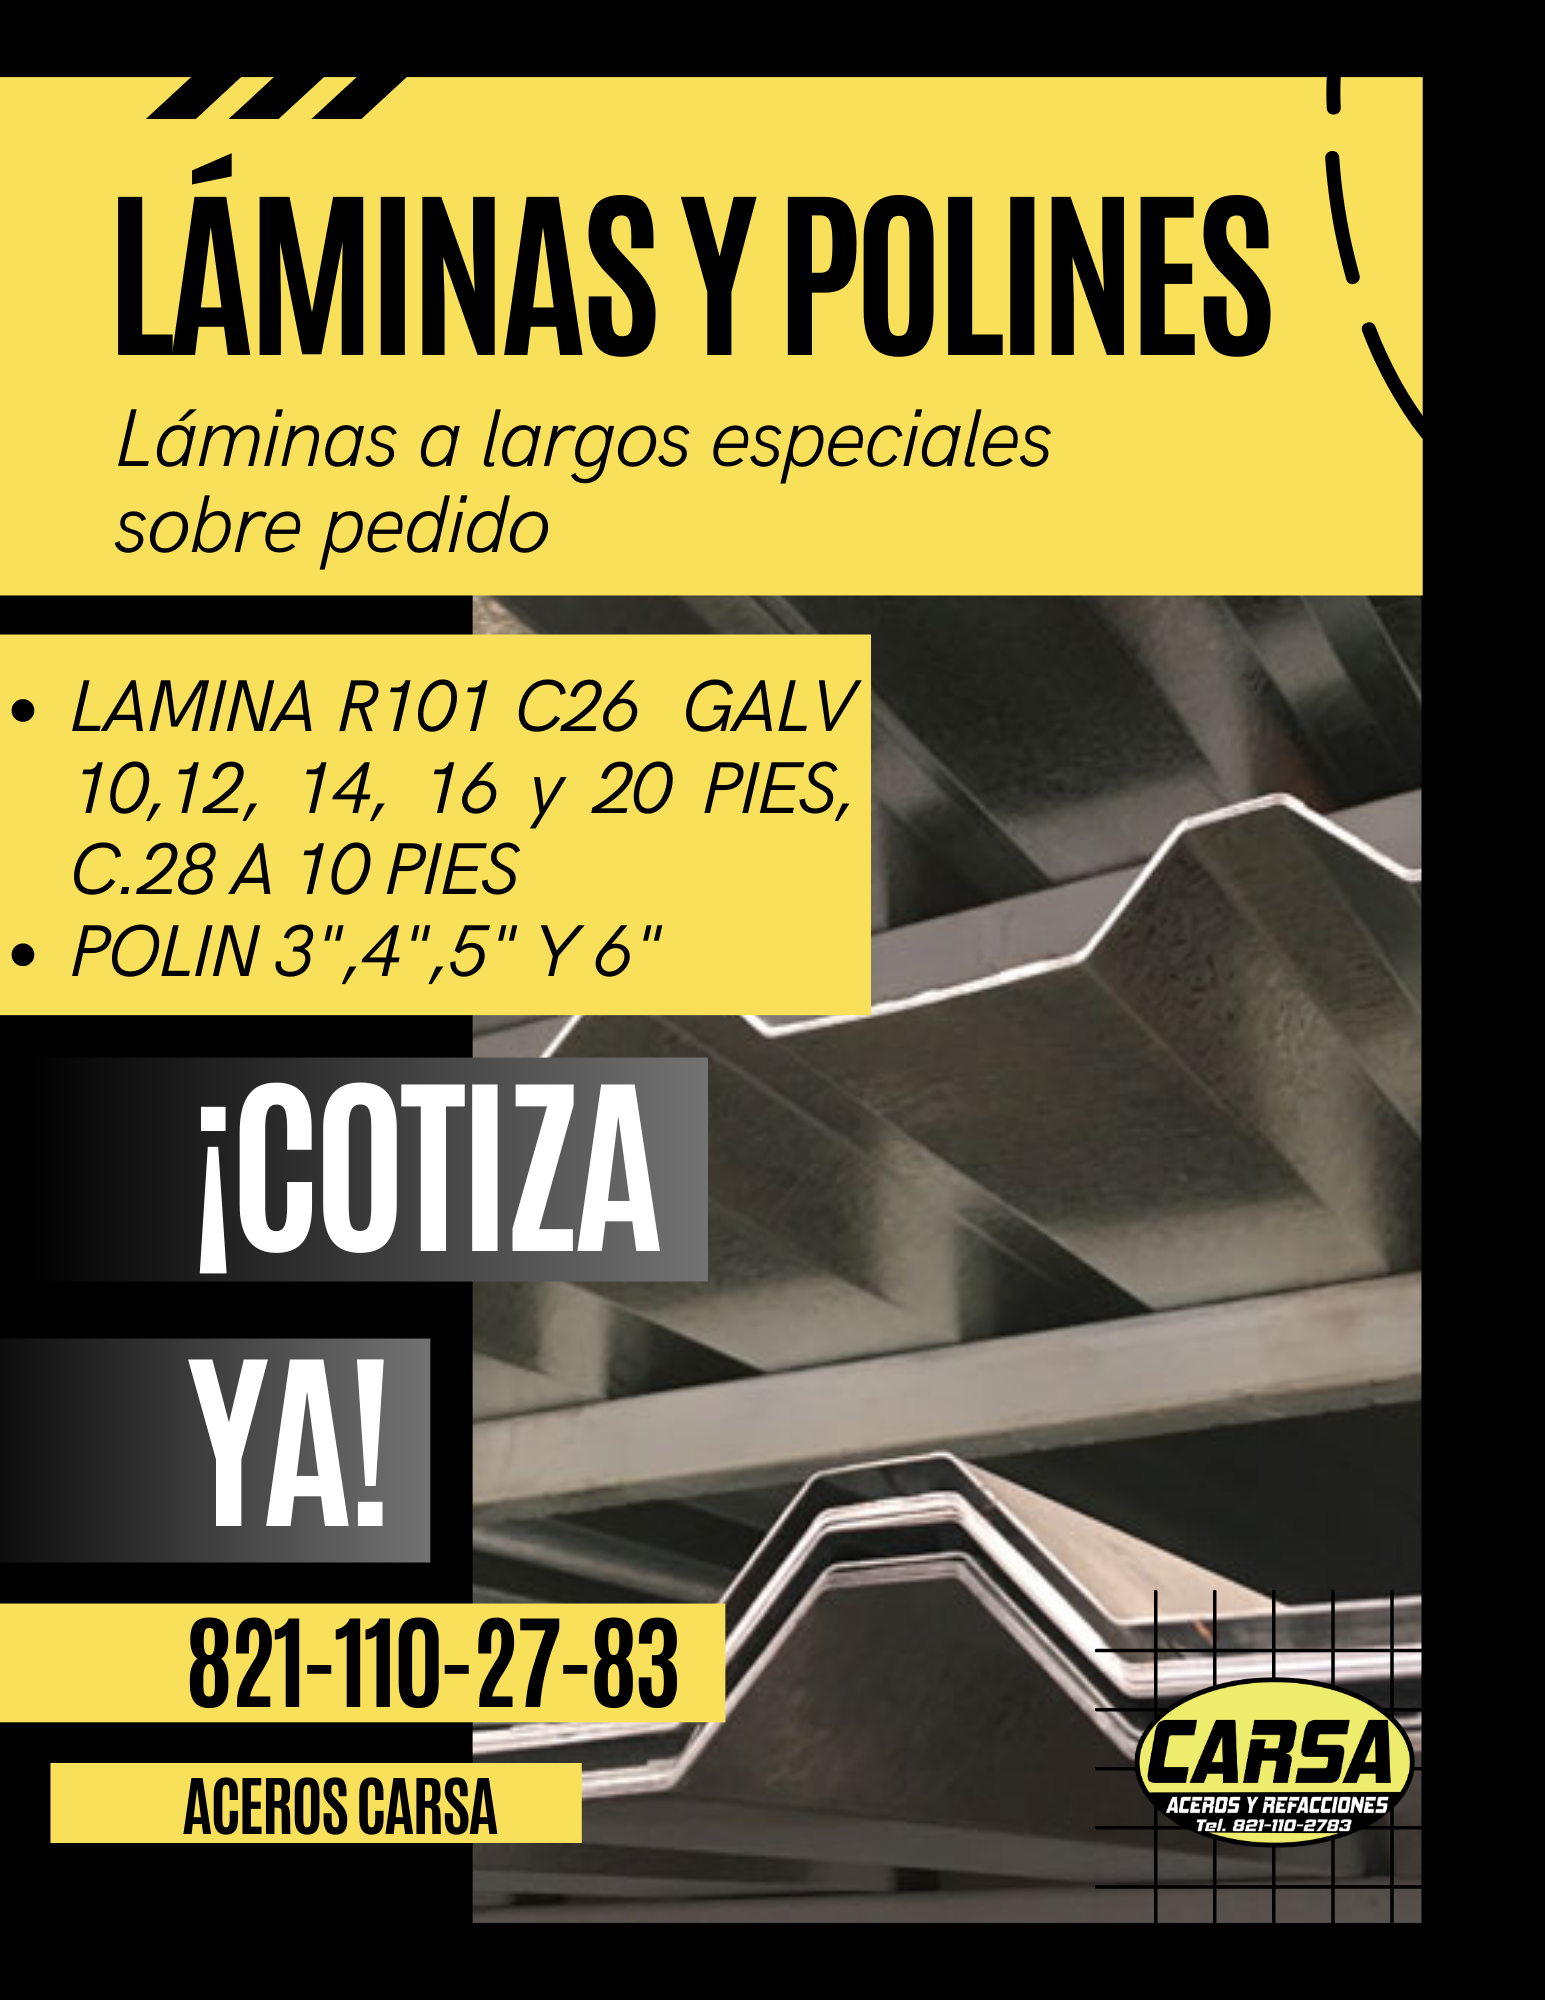 LAMINASY POLINES |

Ldaminas a largos especiales
sobre pedido

oe LAMINA R101 C26 GALV
10,12, 14, 16 y 20 PIES,
C.28 A 10 PIES

e POLIN 3",4",5"Y 6"

COTIZA

 

   

AGEROS CARSA